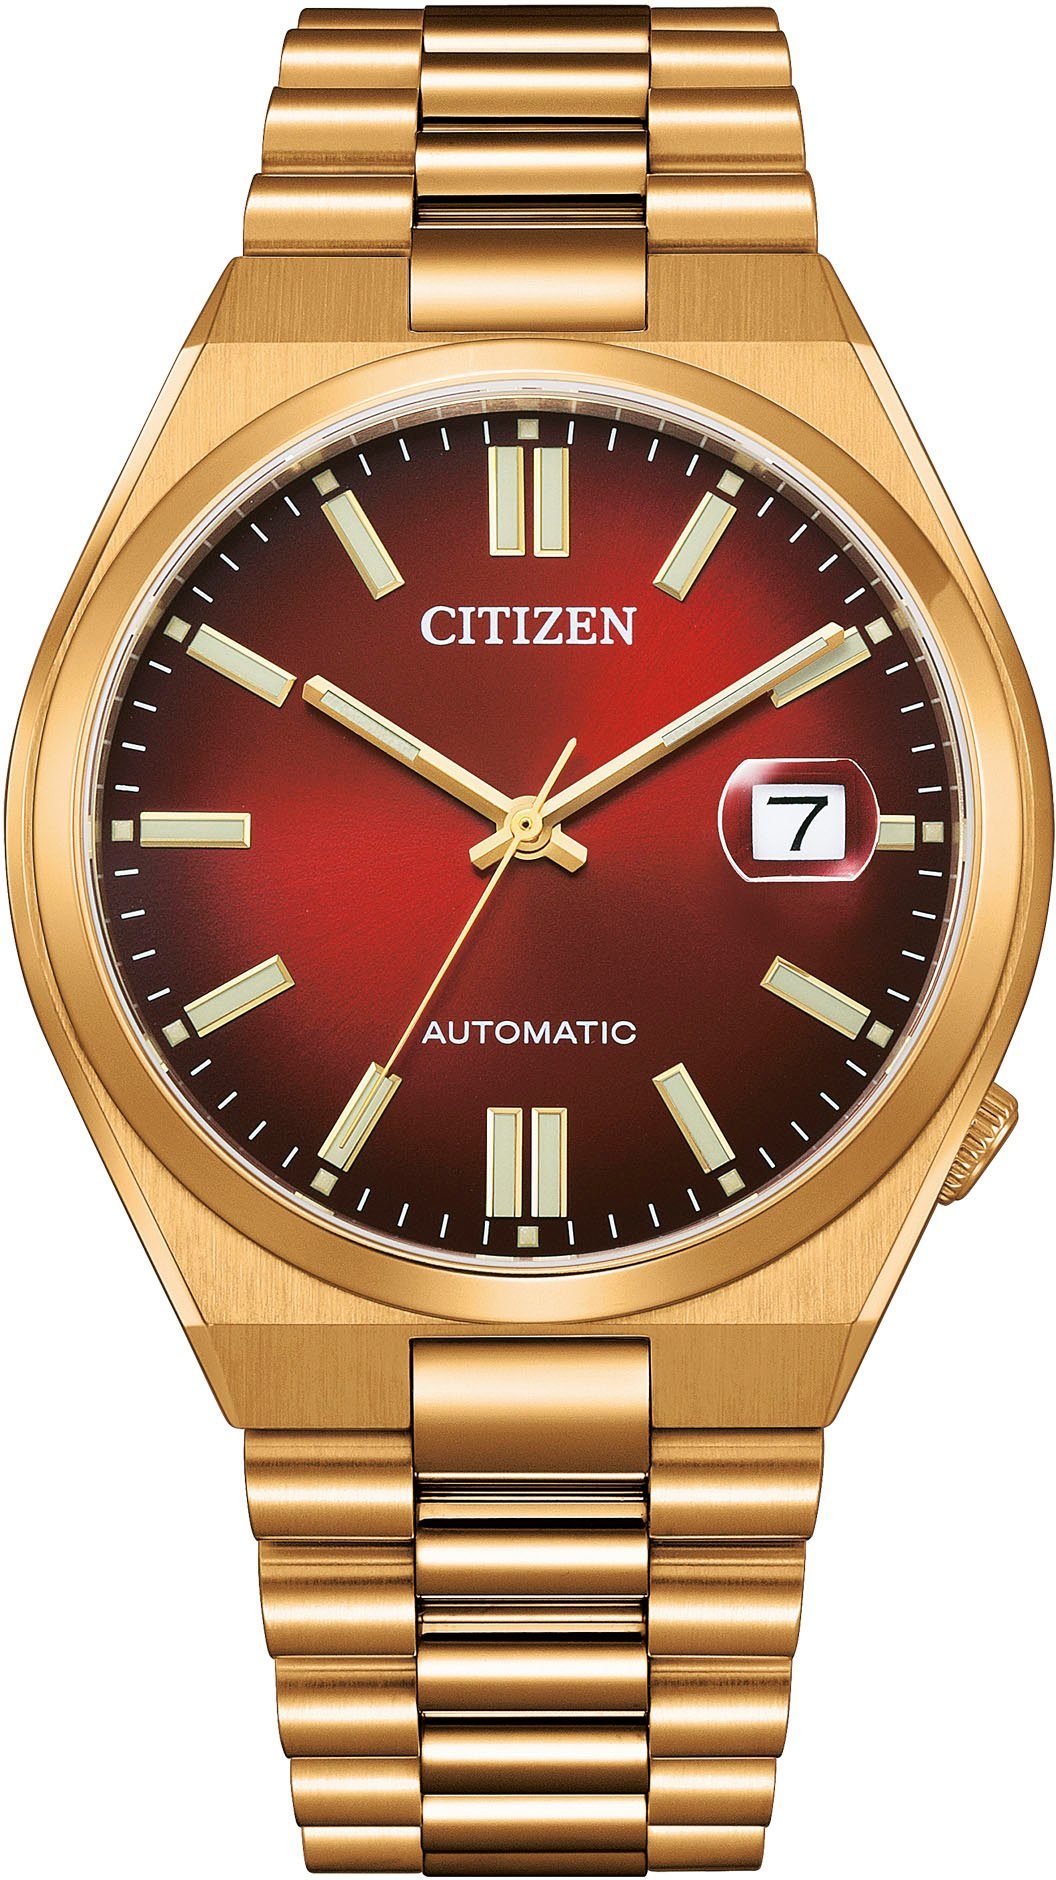 Goldene Citizen Herrenuhren online kaufen | OTTO